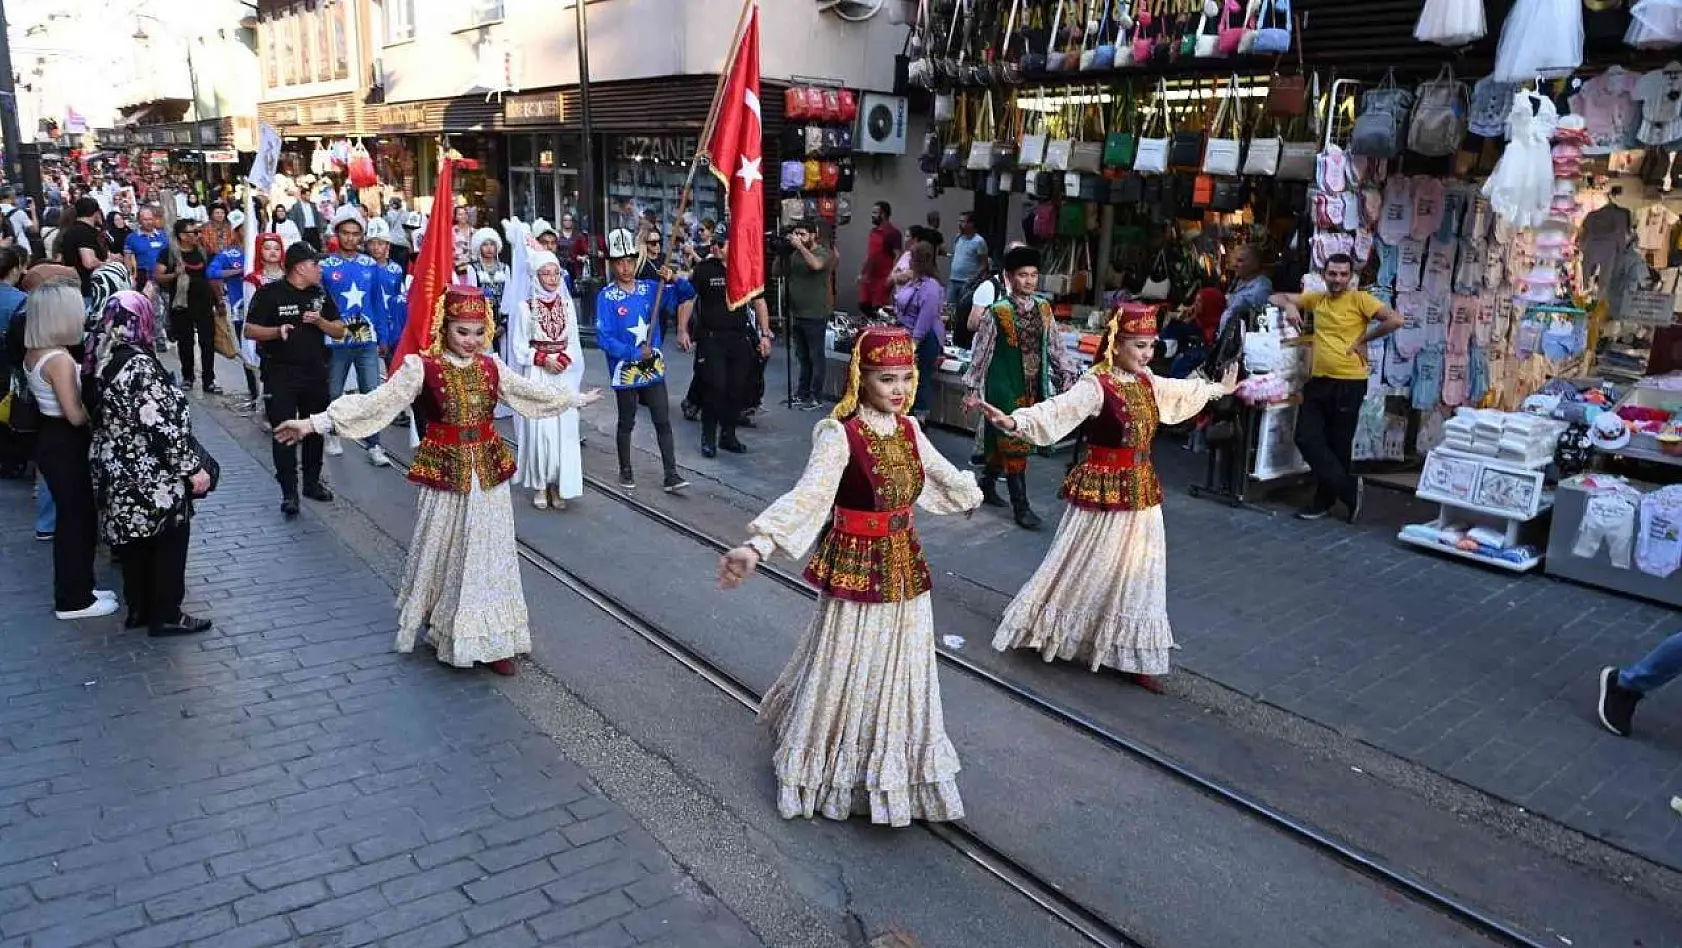 Türk Dünyası Ata Sporları Şenliği renkli kortej yürüyüşüyle başladı